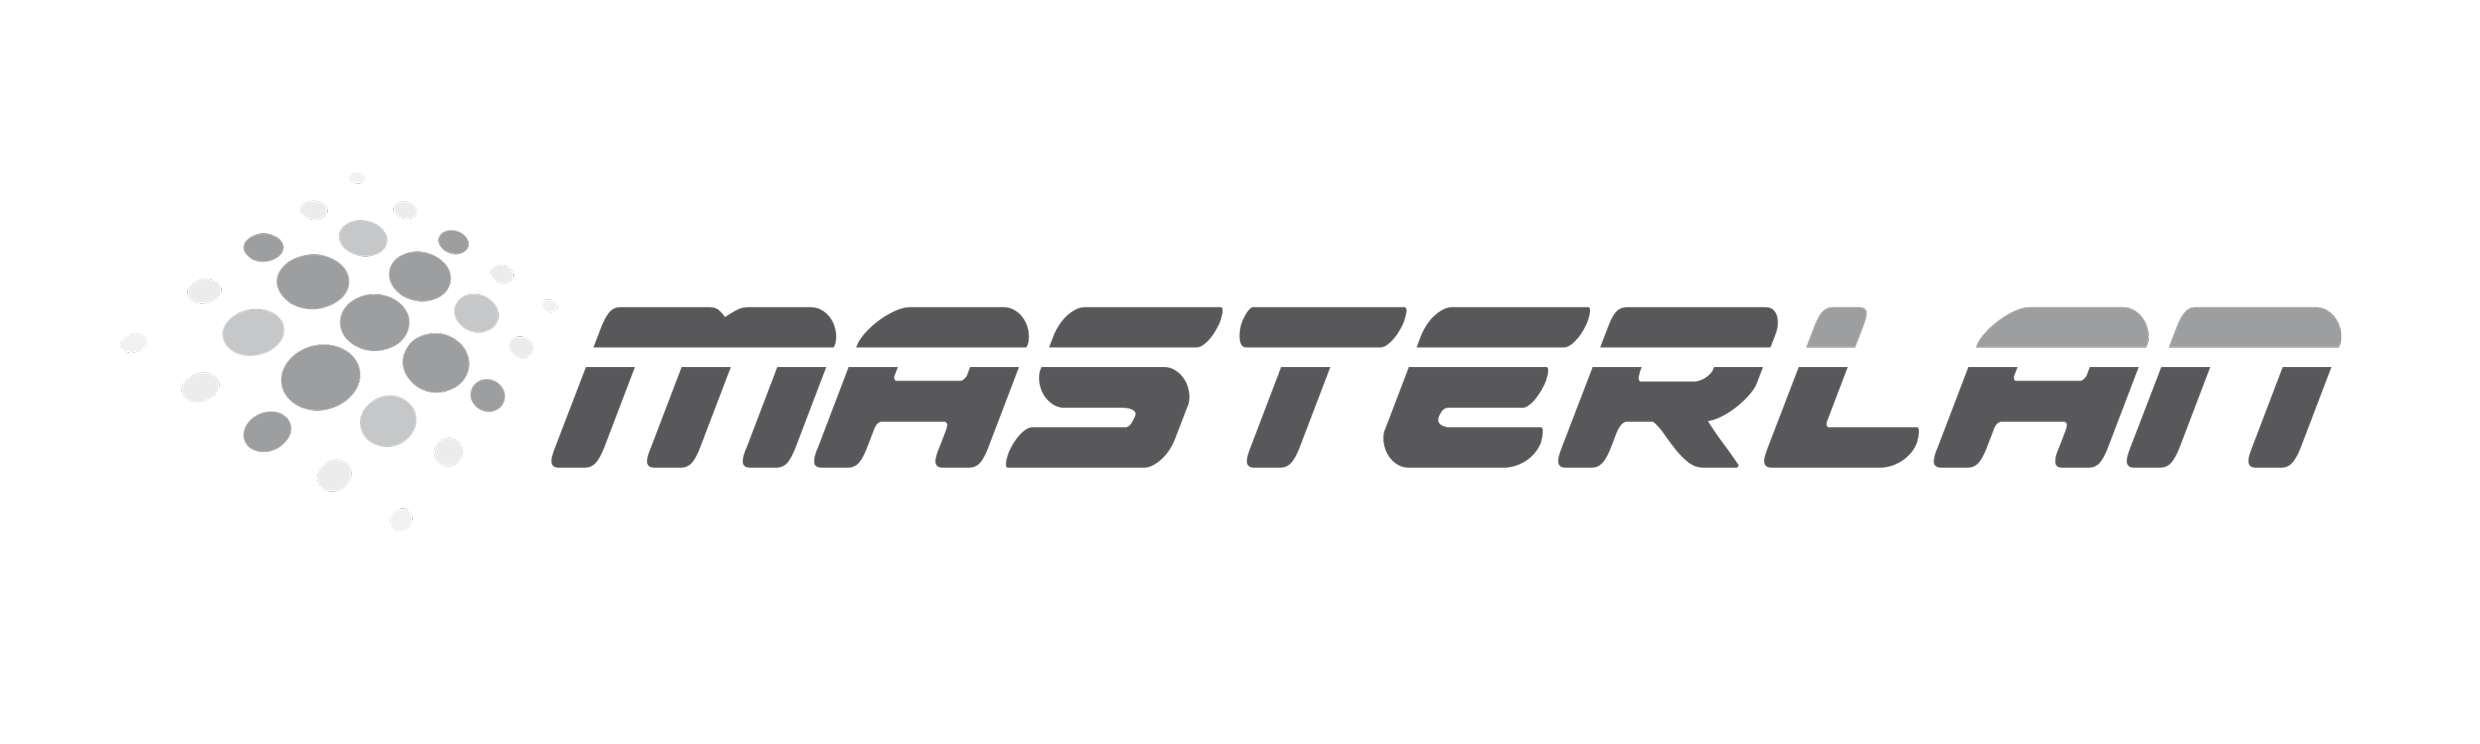 Masterlan gray logo